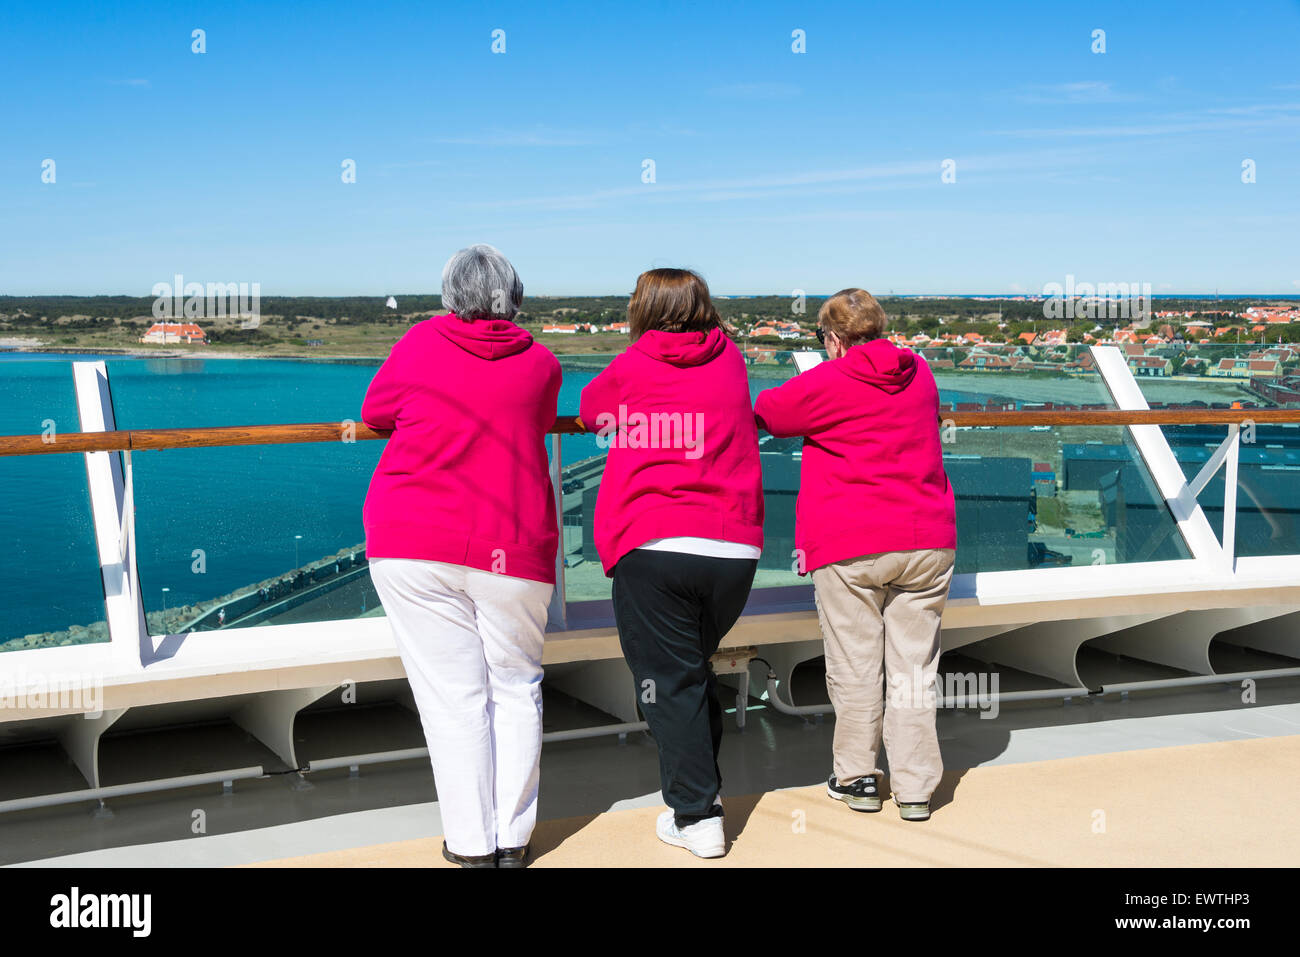 Les passagers de visualisation de Pont Royal Caribbean 'Brilliance of the seas' bateau de croisière, Skagen, région nord du Jutland, Danemark Banque D'Images